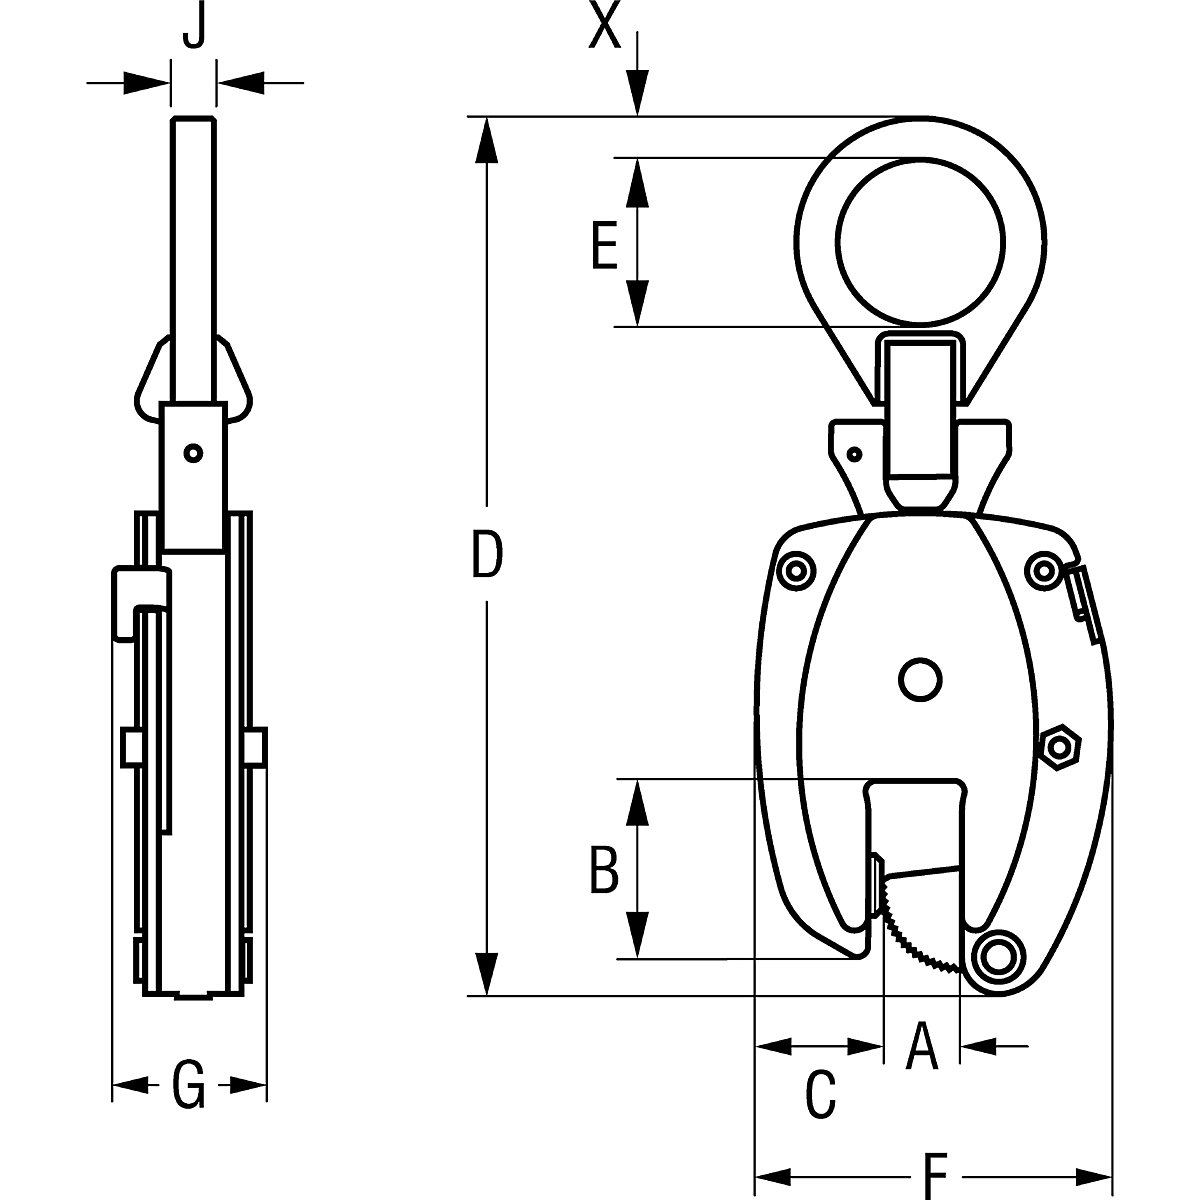 Clemă de suspensie model KL, utilizare pe verticală – Pfeifer (Imagine produs 11)-10